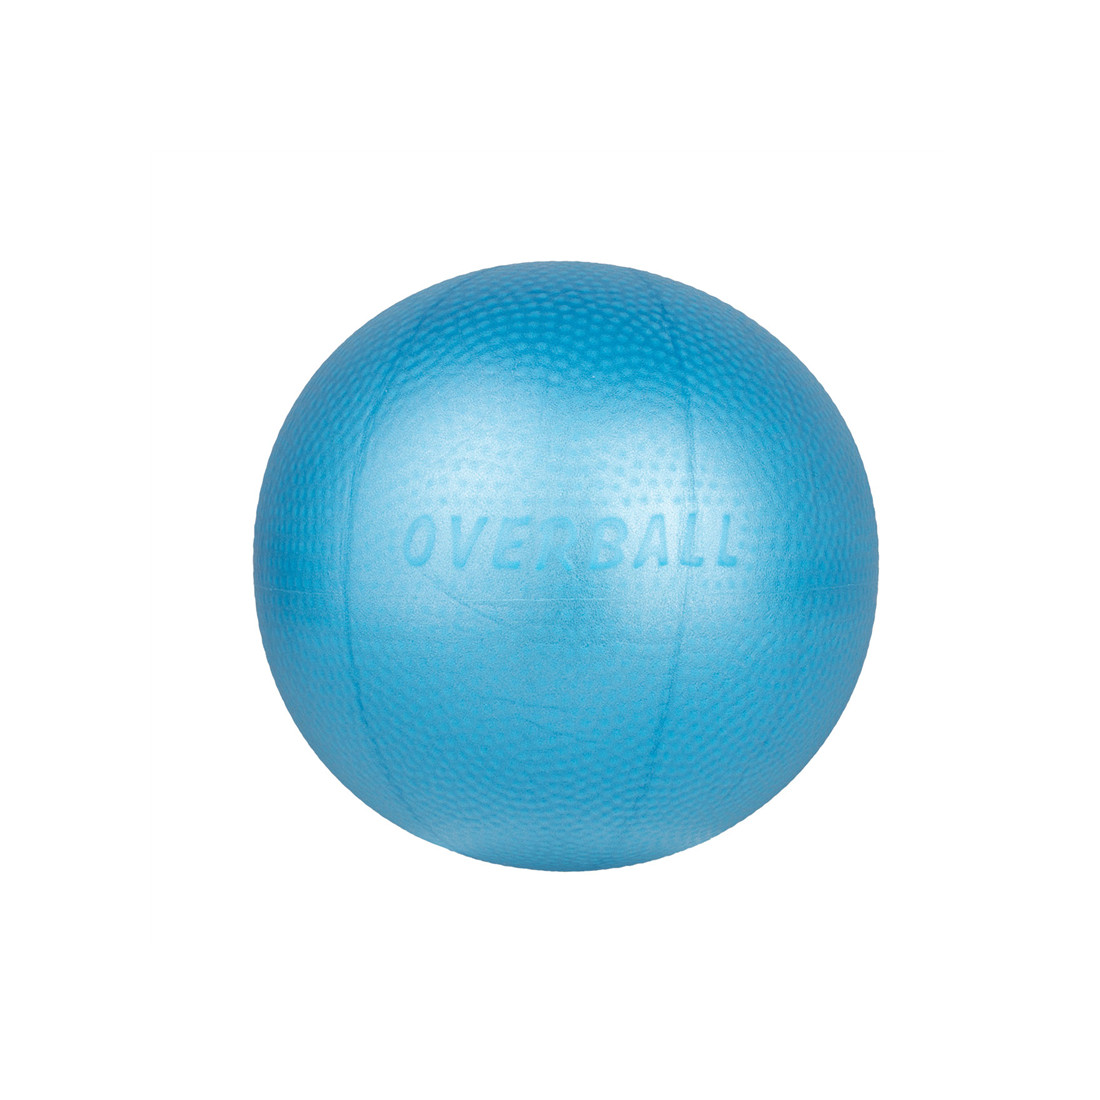 Reabilitacinis-treniruočių kamuoliukas Yate Overball Blue, 23cm 1